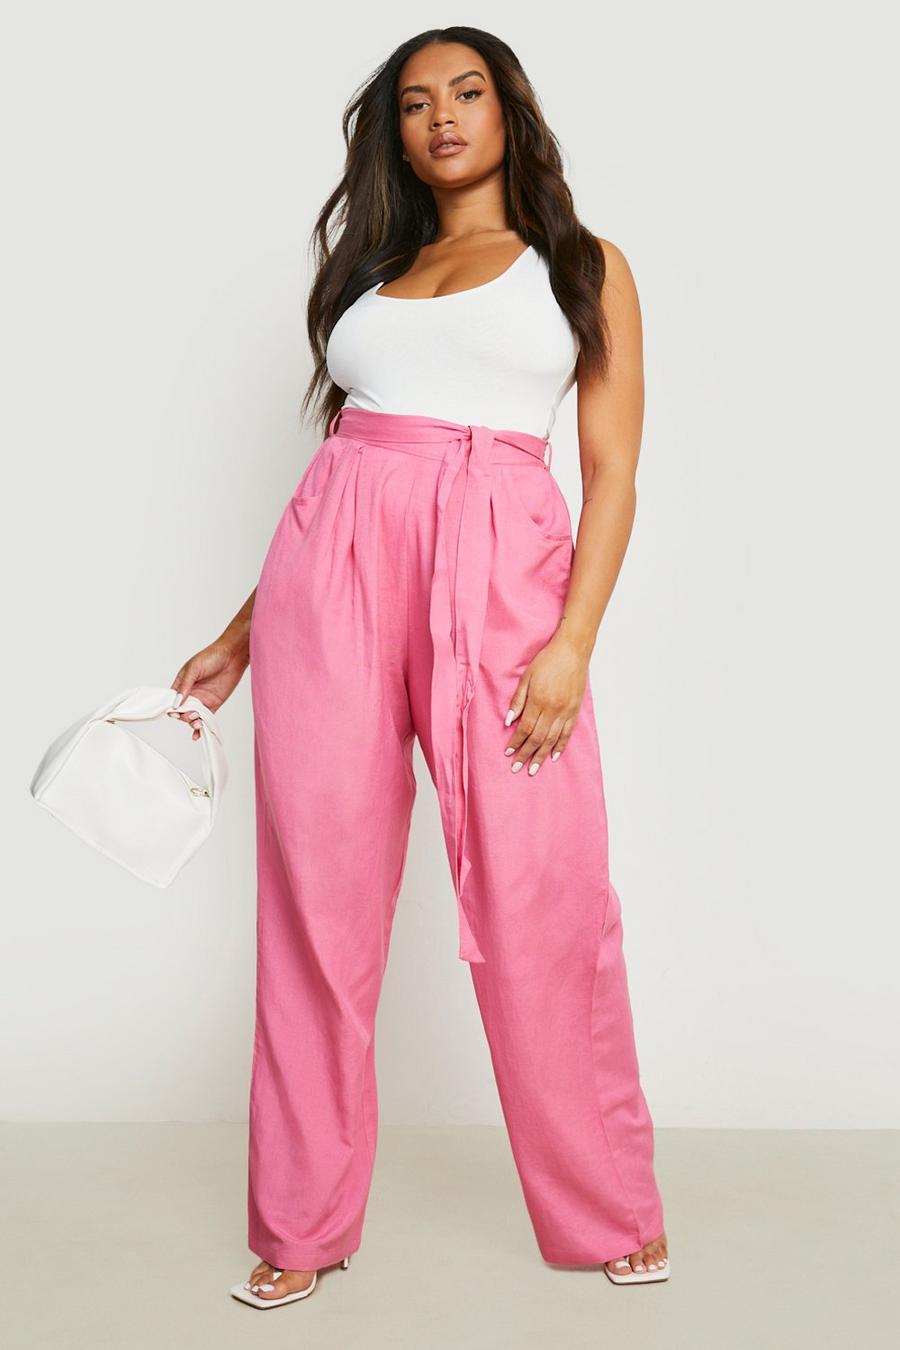 Hot pink מכנסי פשתן בגזרה רחבה עם חגורה, מידות גדולות